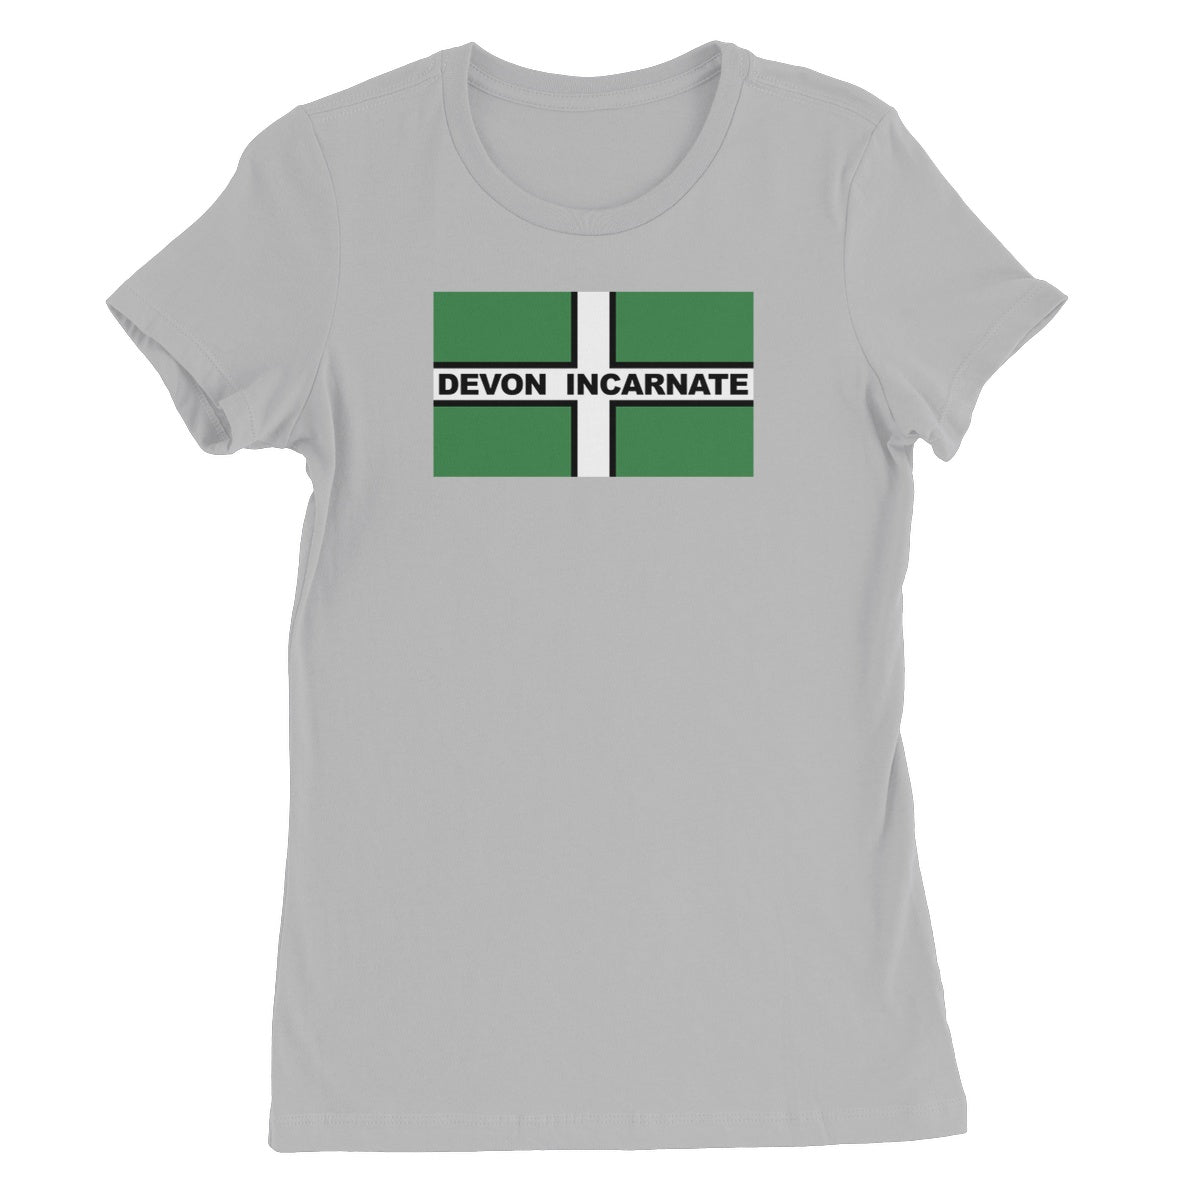 Devon Incarnate Women's T-Shirt